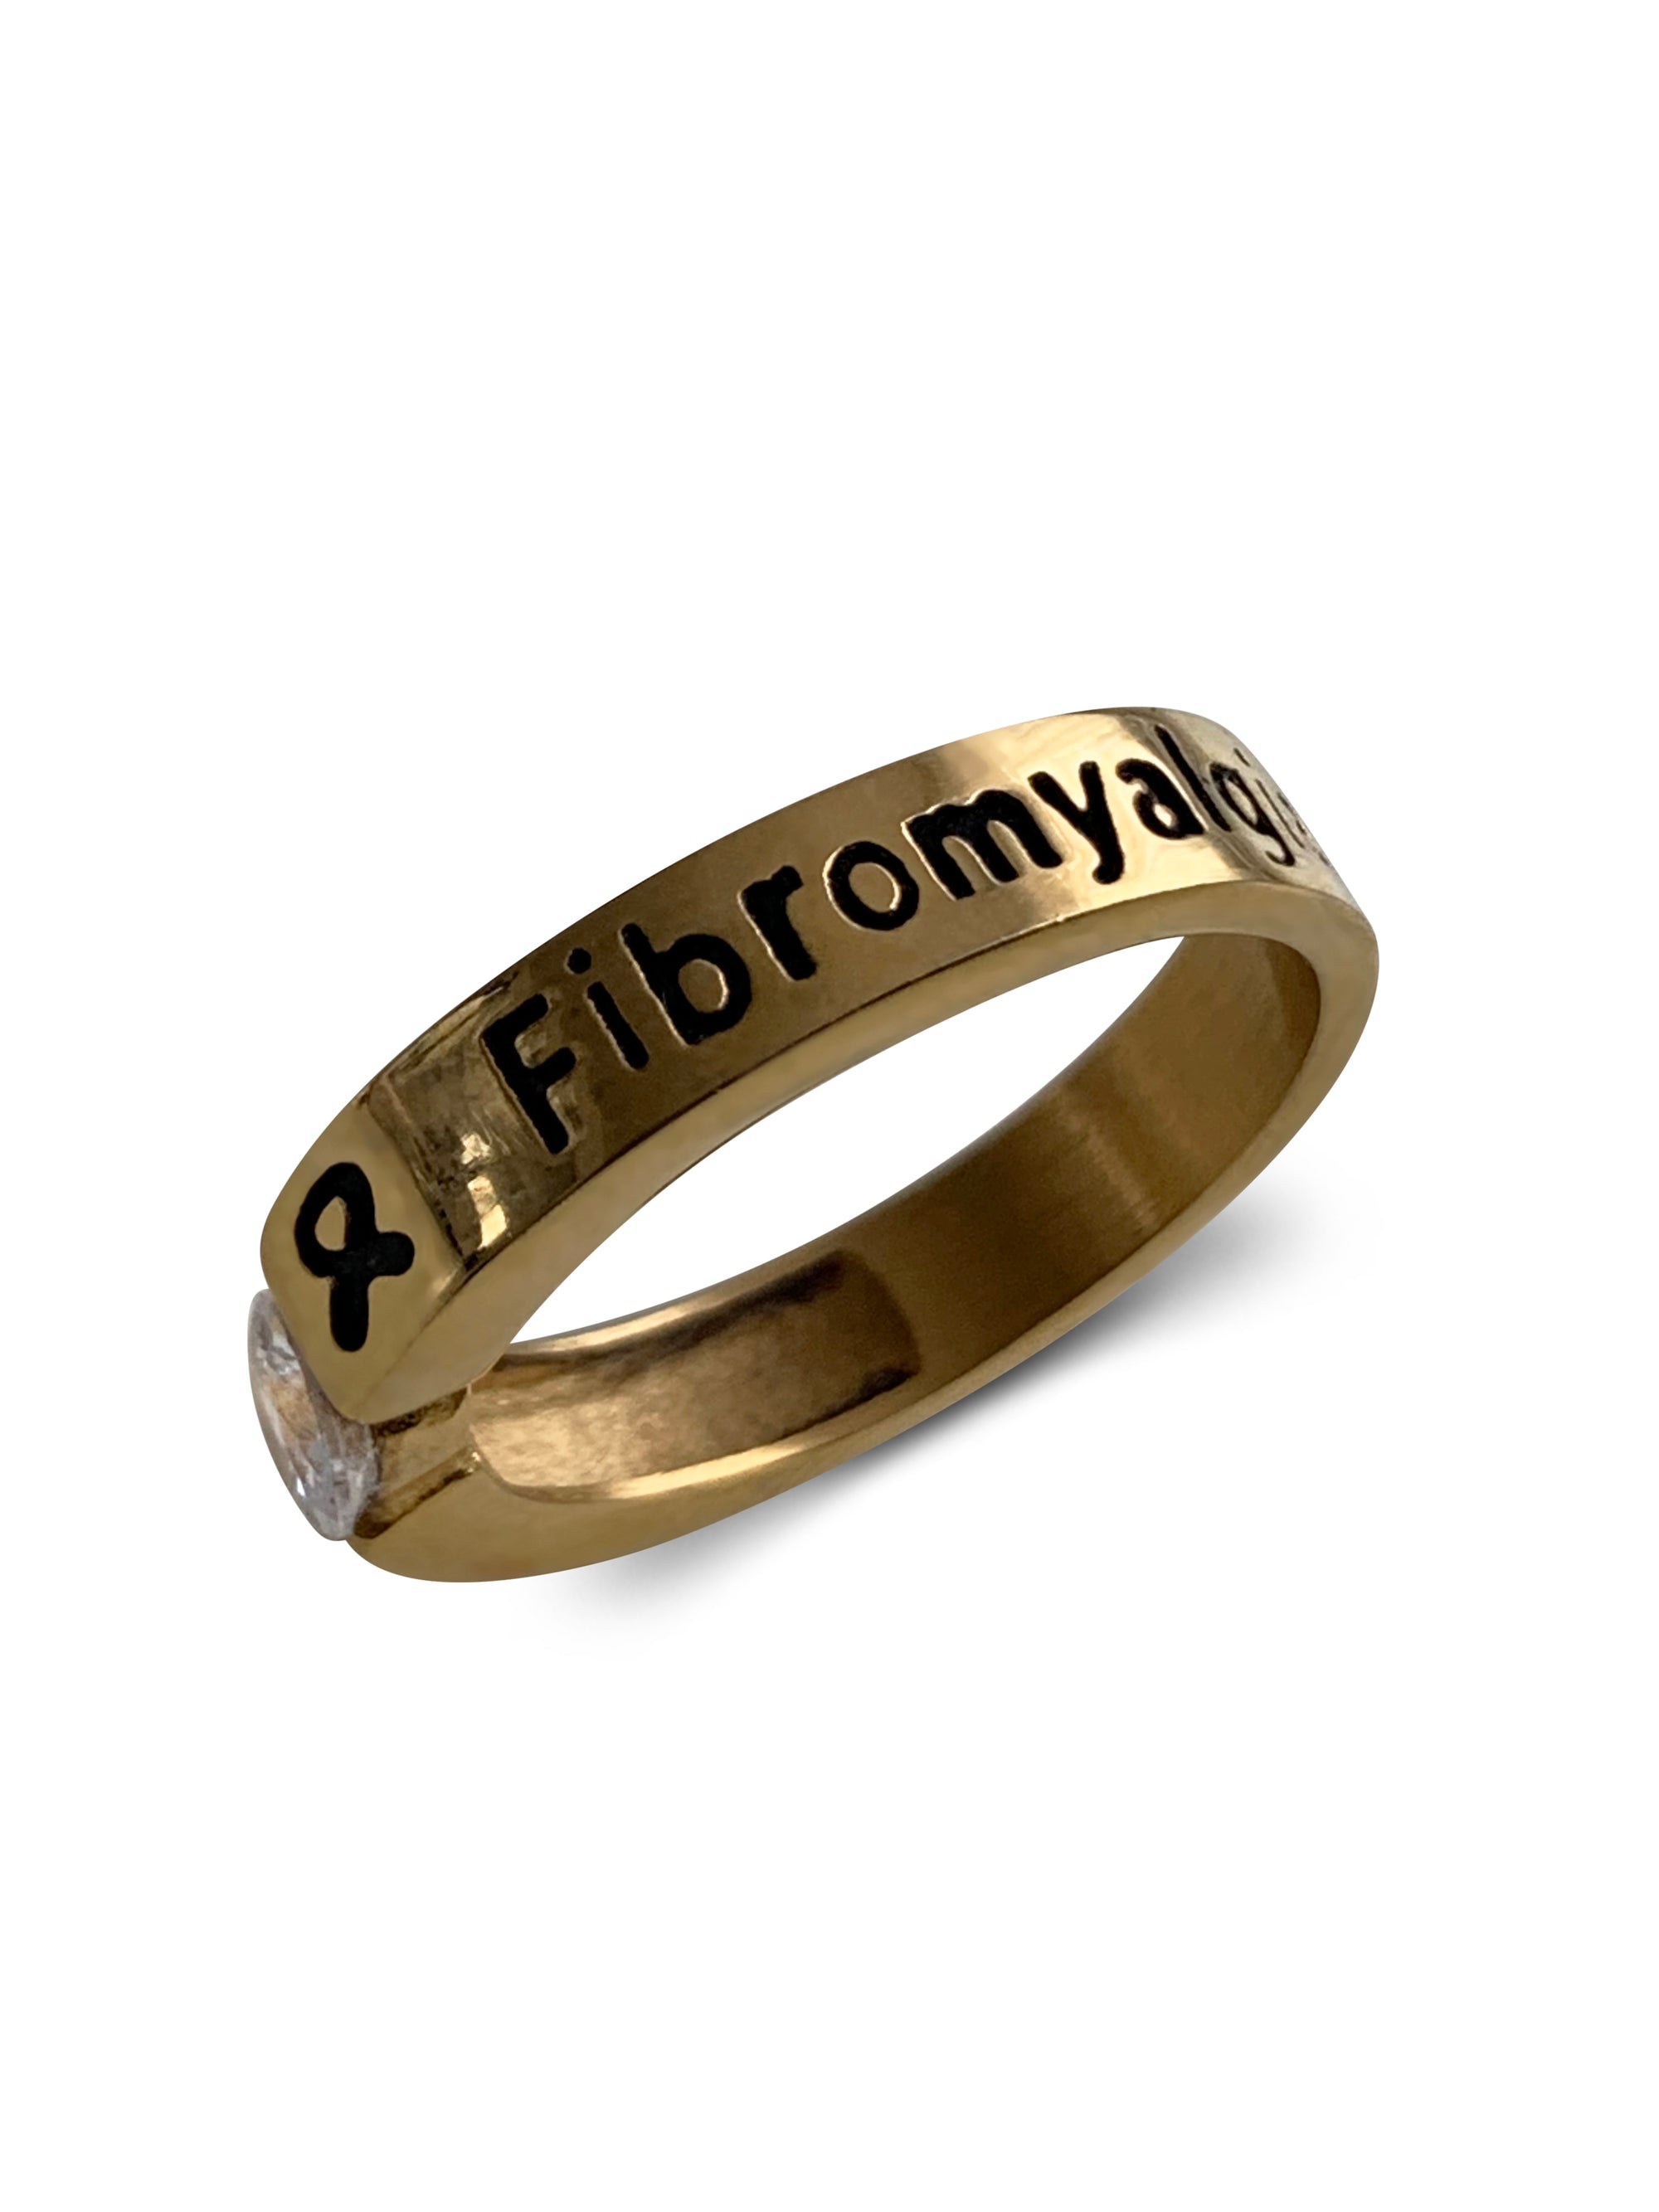 GOLD DIAMOND FIBROMYALGIA RING